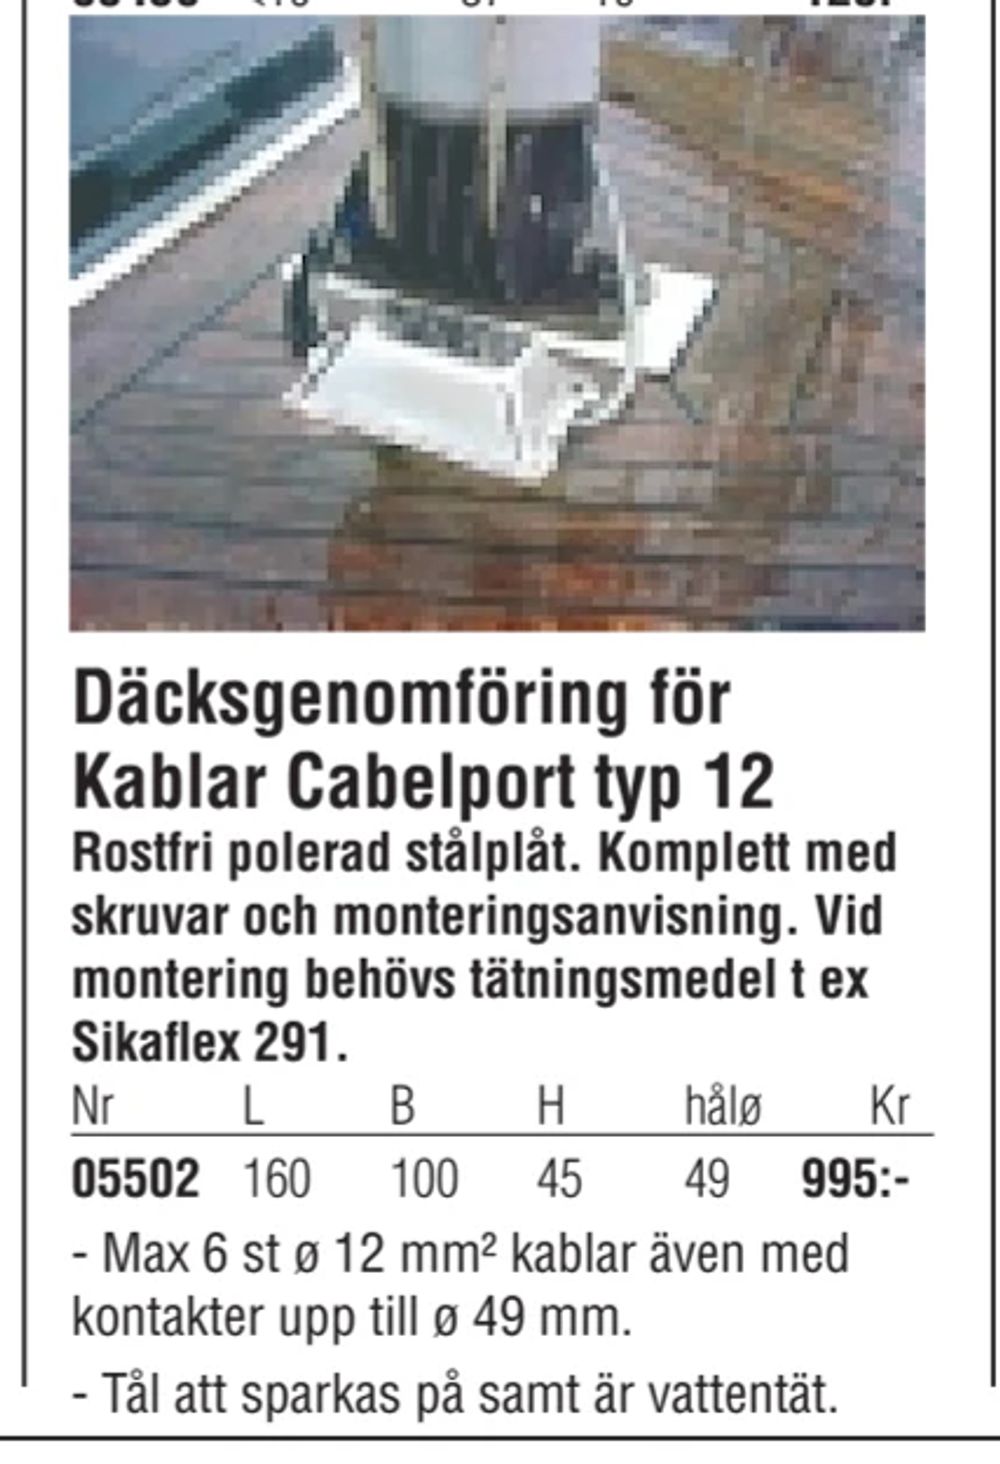 Erbjudanden på Däcksgenomföring för Kablar Cabelport typ 12 från Erlandsons Brygga för 995 kr